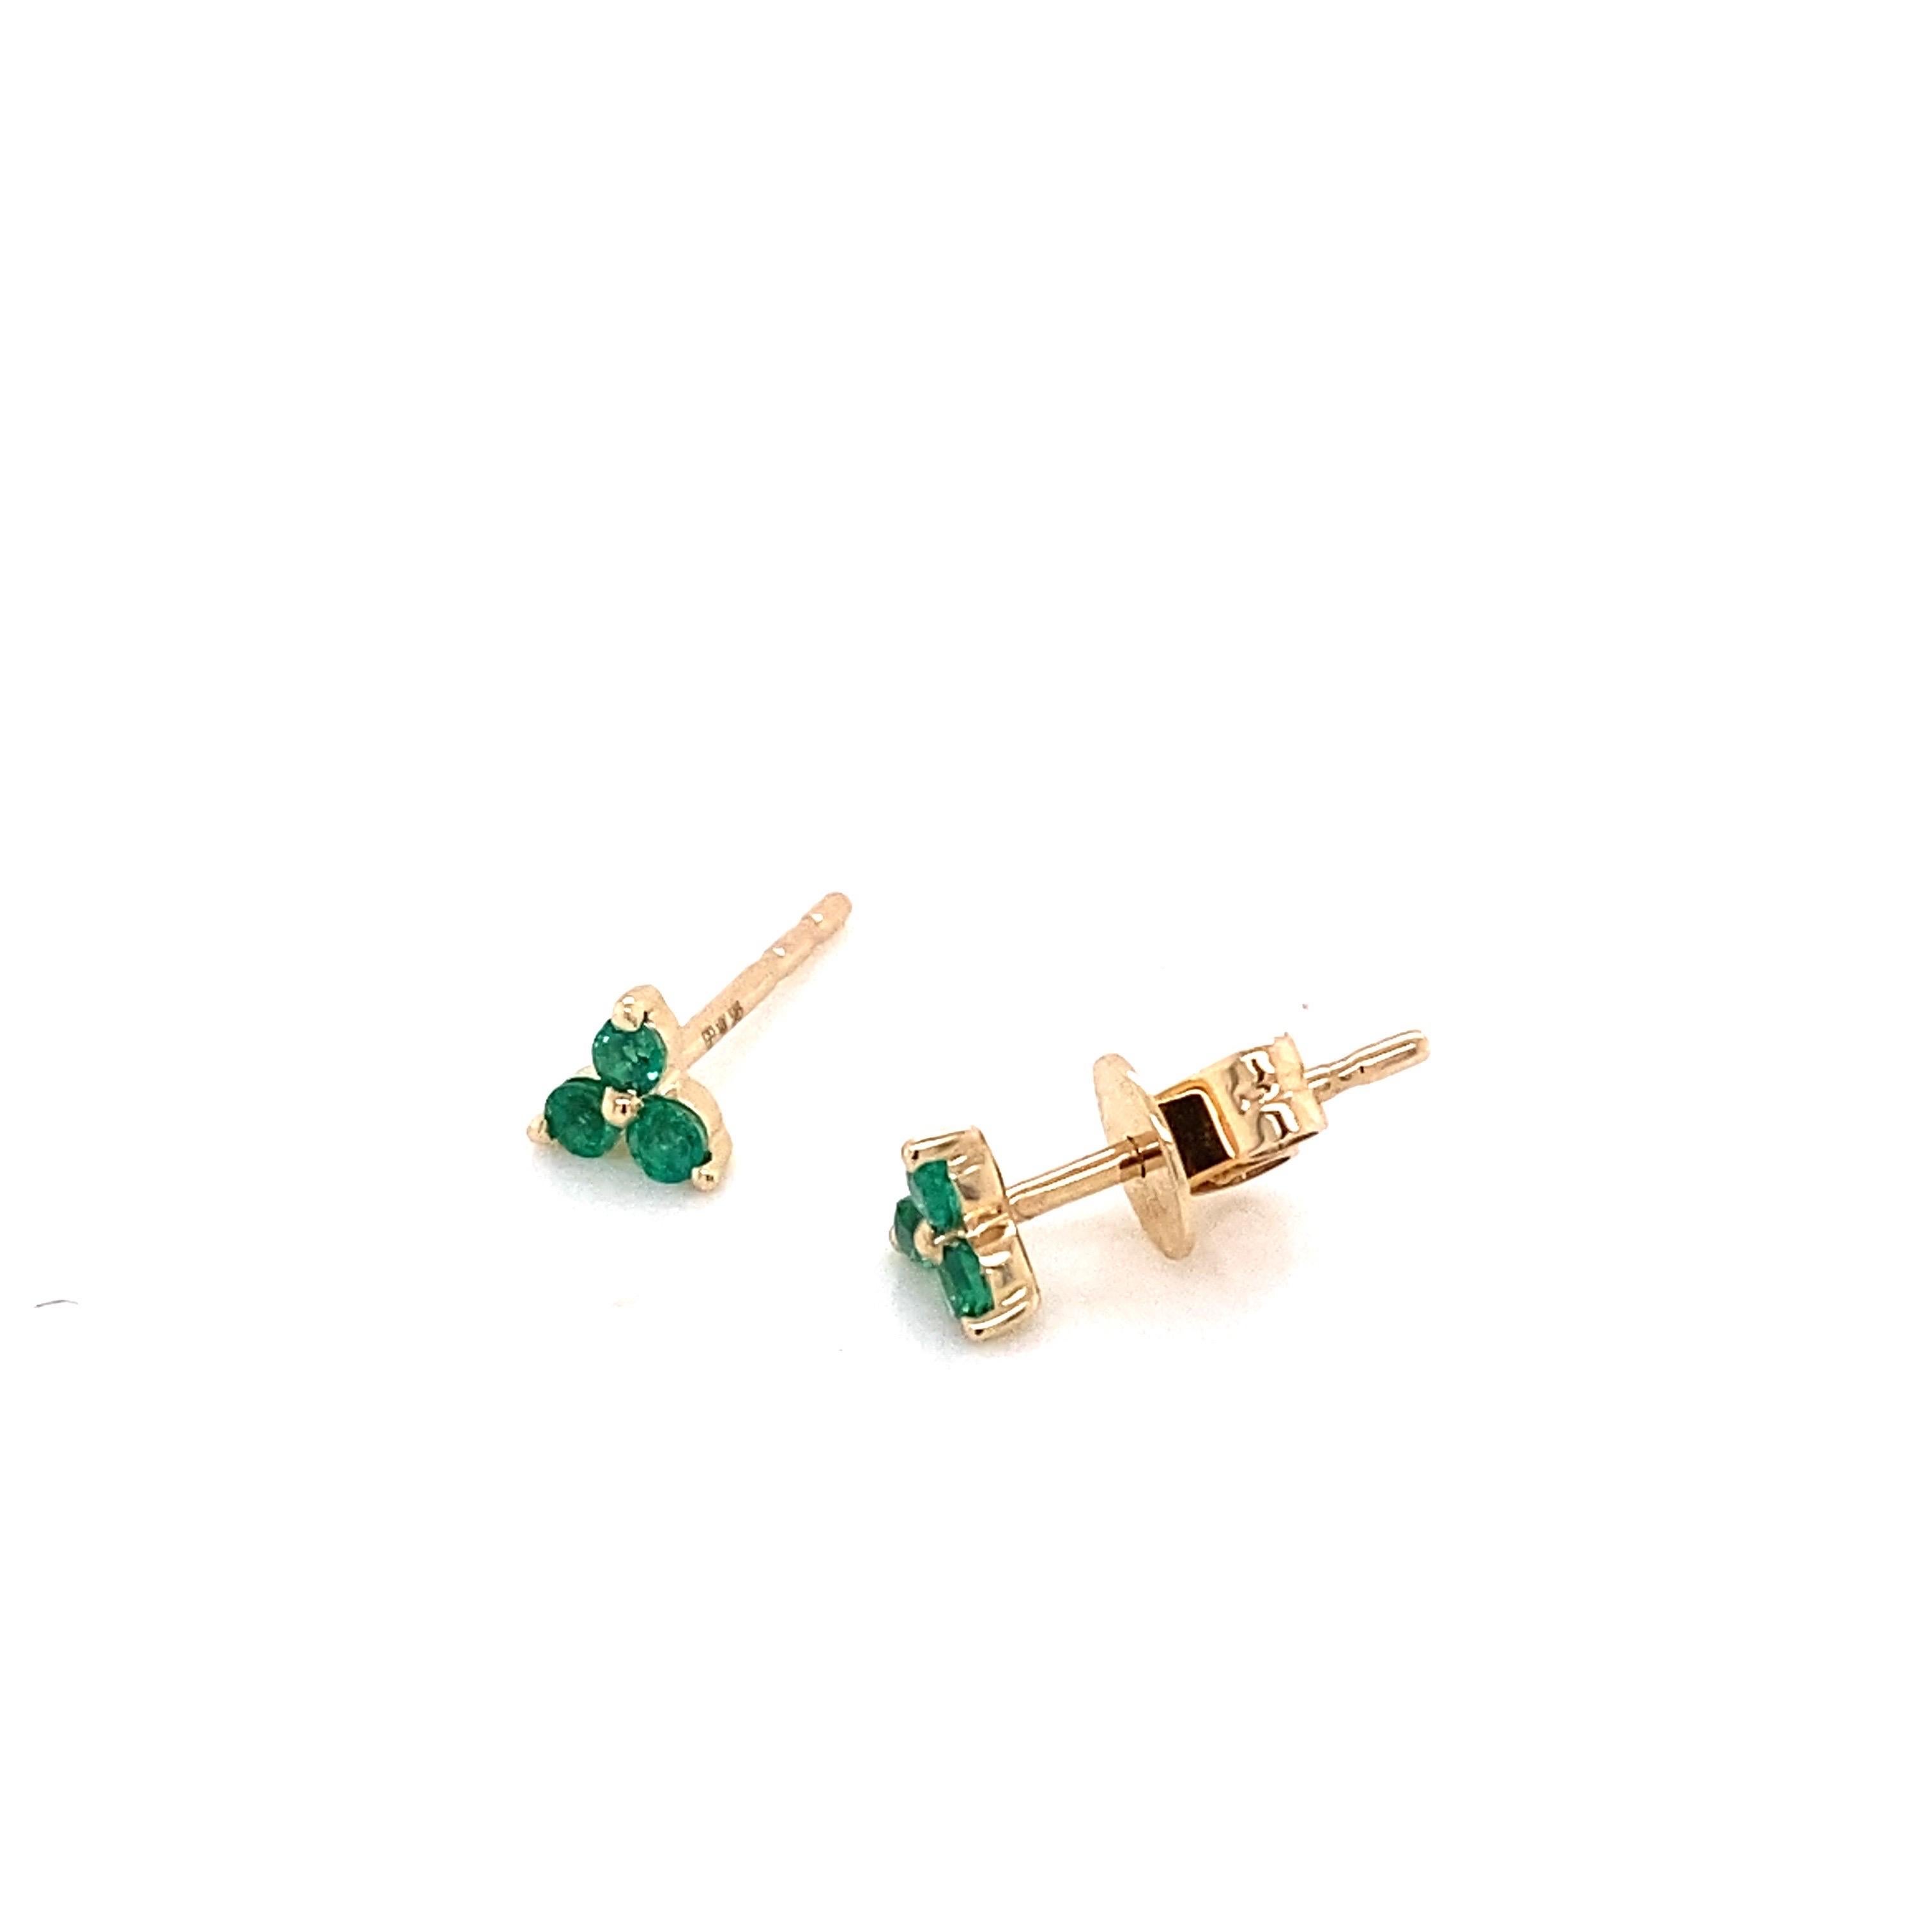 Diese zierlichen Ohrringe bestehen aus einem Trio von Smaragden, die in 14 Karat Gelbgold gefasst sind. Friktionspfosten mit Schmetterlingsrücken. Perfekt, um sie zusammen zu tragen oder mit anderen Ohrringen zu kombinieren. 
Abmessungen: 5mm x 4mm